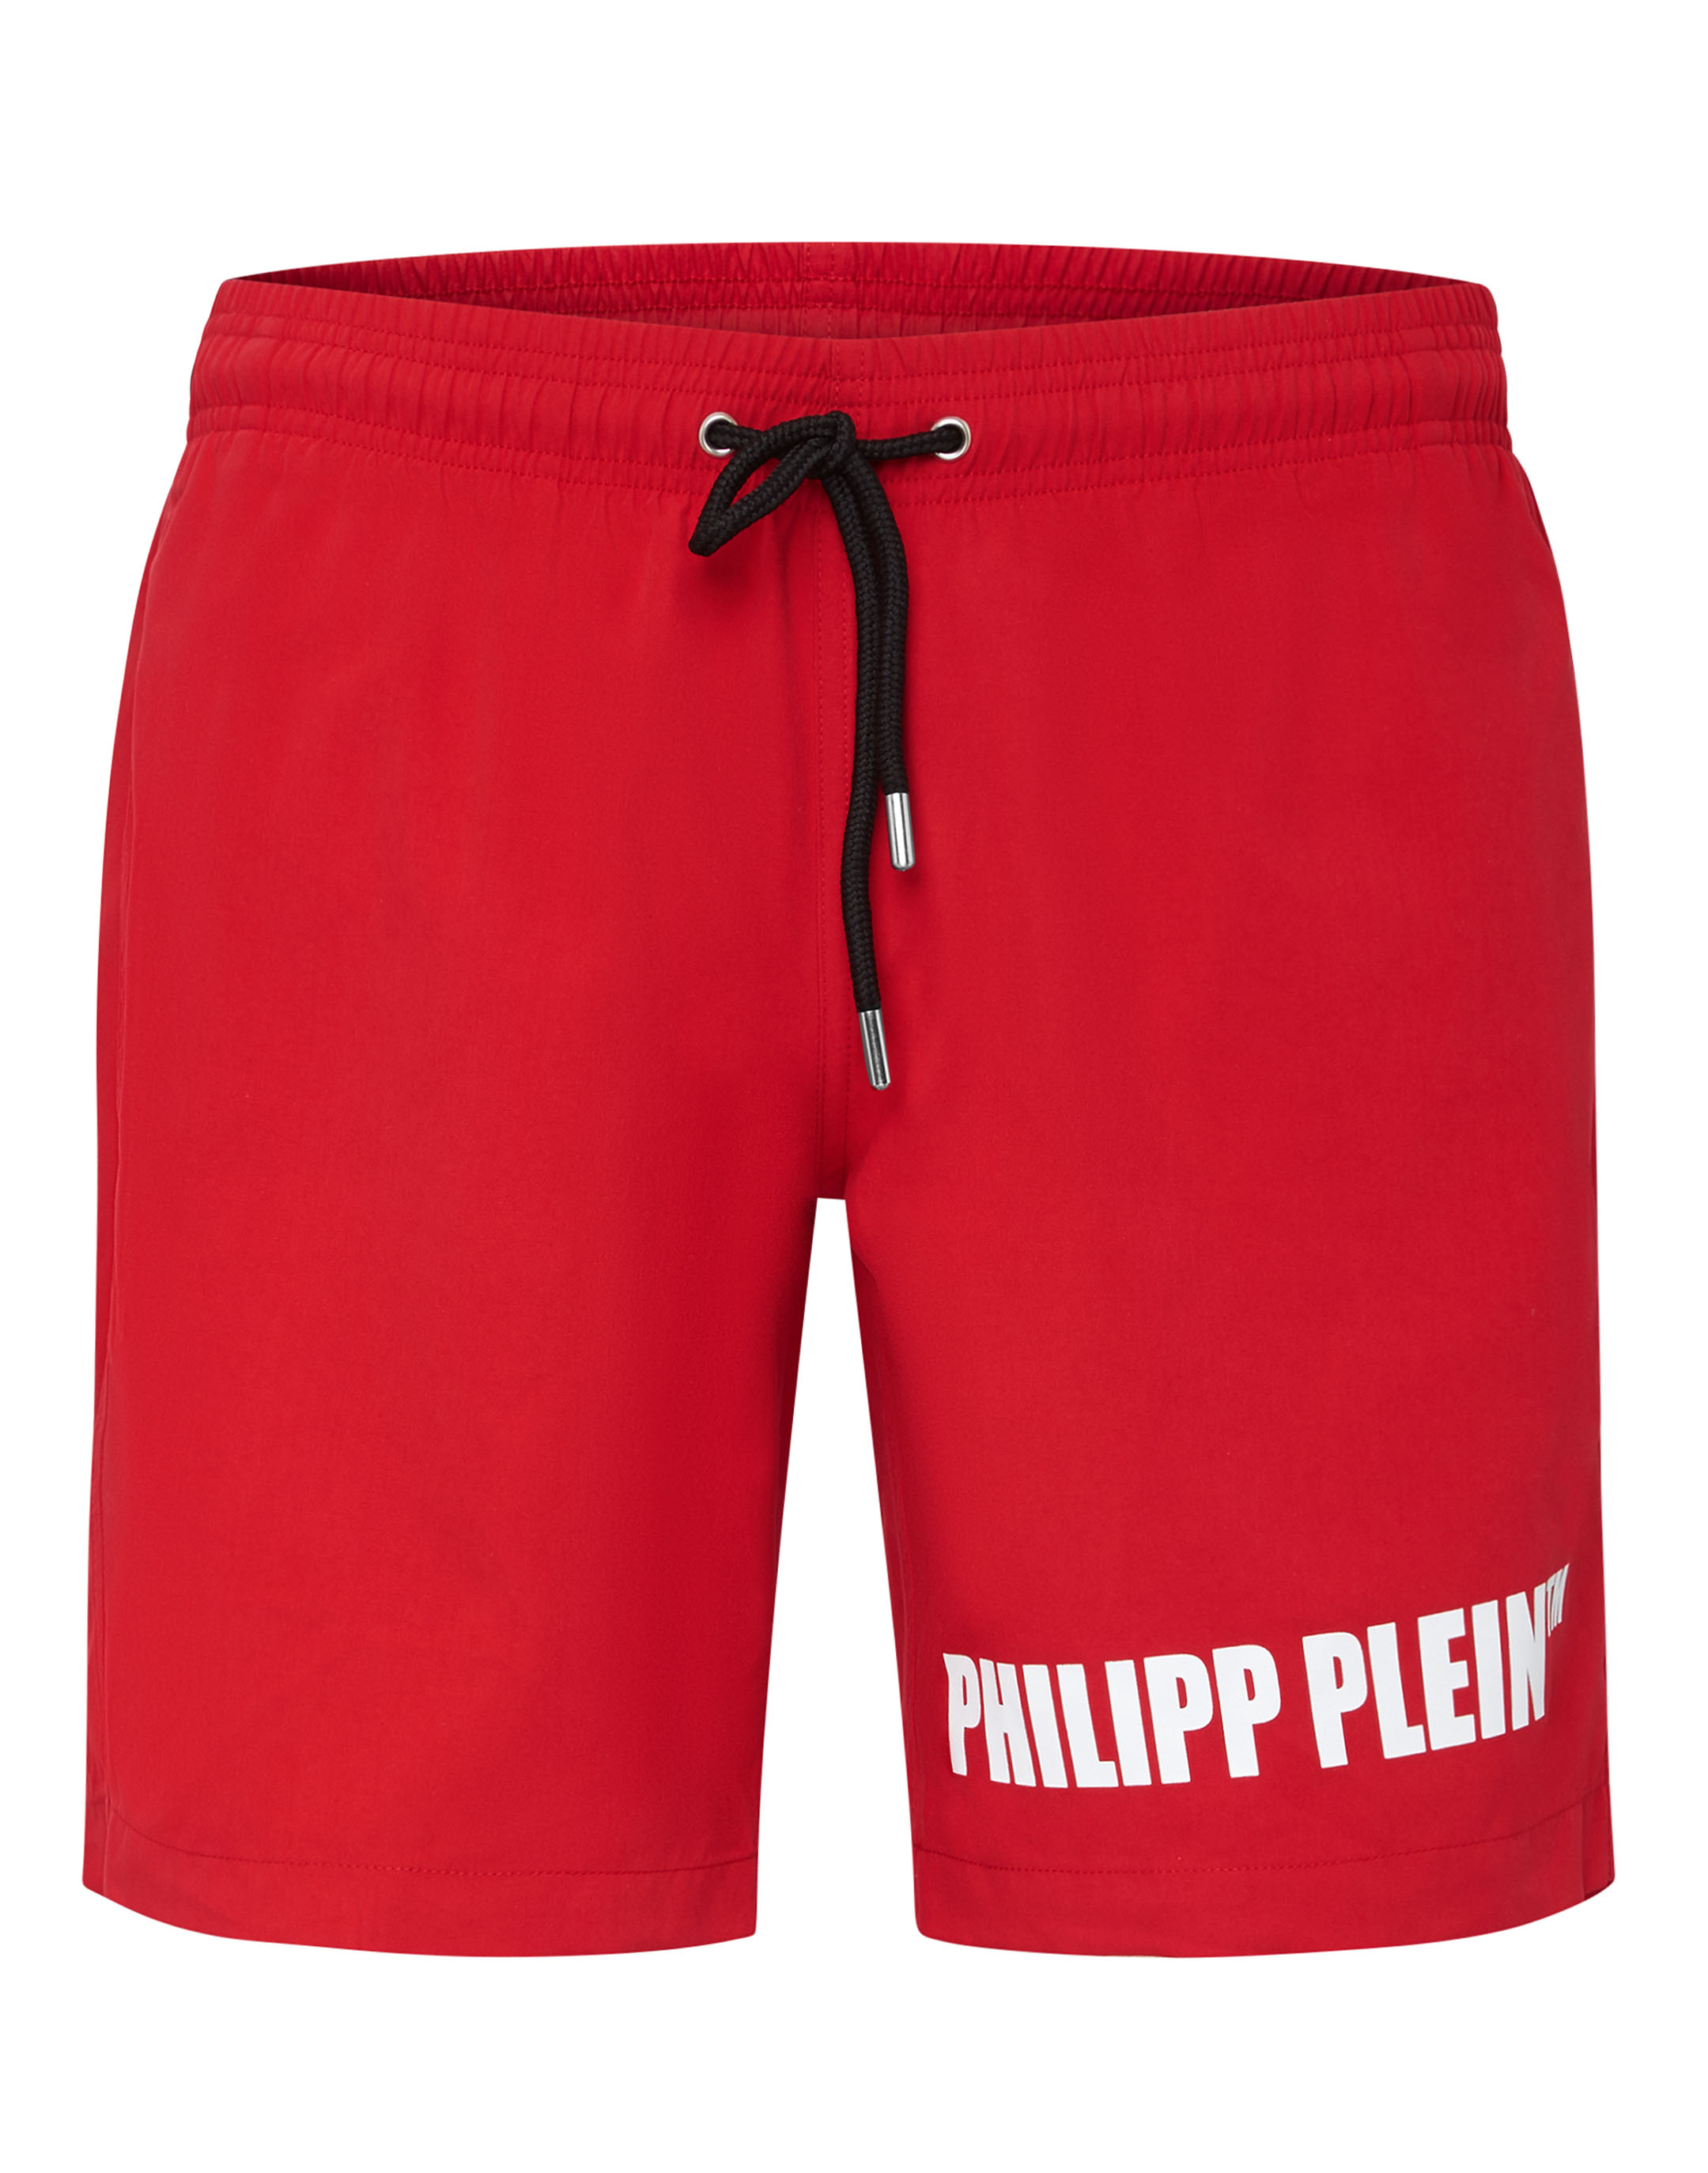 gemakkelijk Reciteren daar ben ik het mee eens Beachwear Short Trousers Outline Philipp Plein TM | Philipp Plein